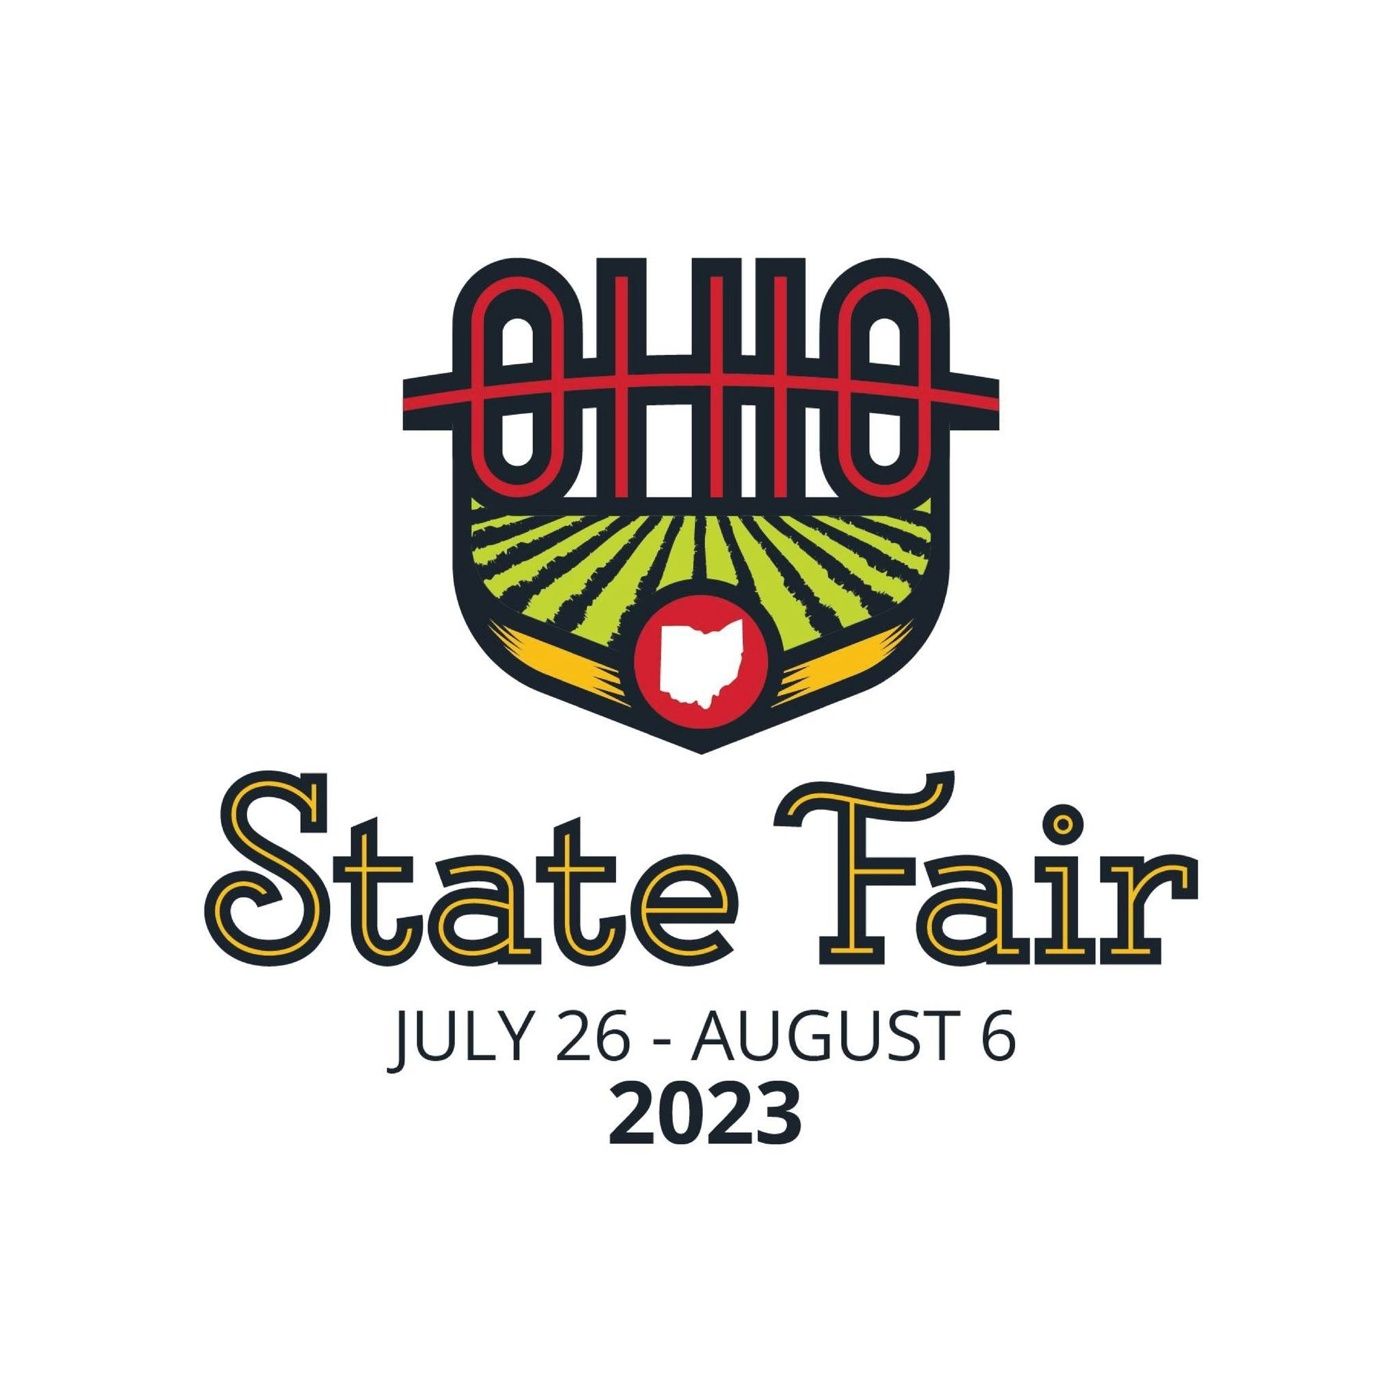 Ohio State Fair 2023